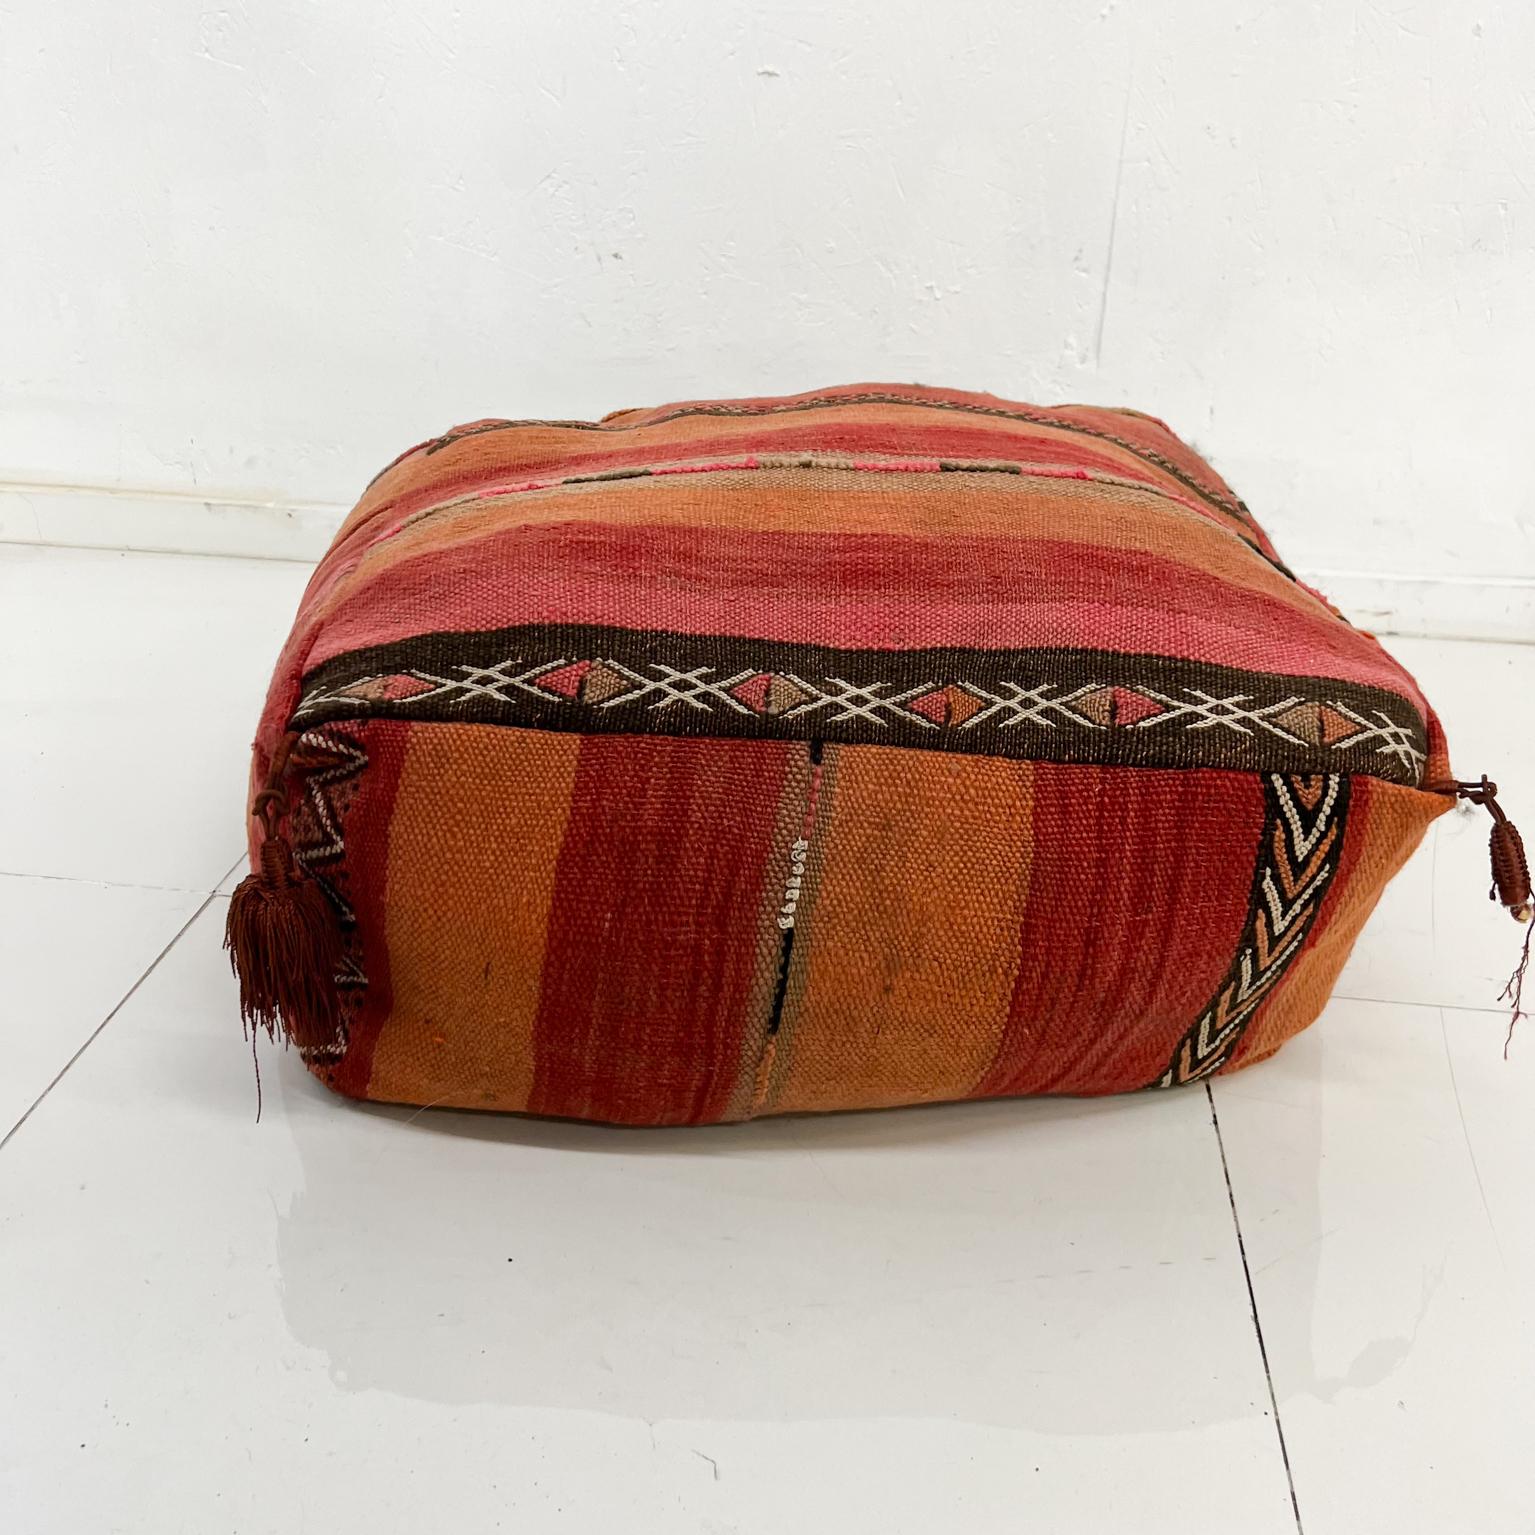 Coussin de sol marocain pouf oreiller
Tissu Kilim couleur audacieuse motif géométrique
21 x 21 x 7 h
État vintage d'origine.
Reportez-vous aux images.
 